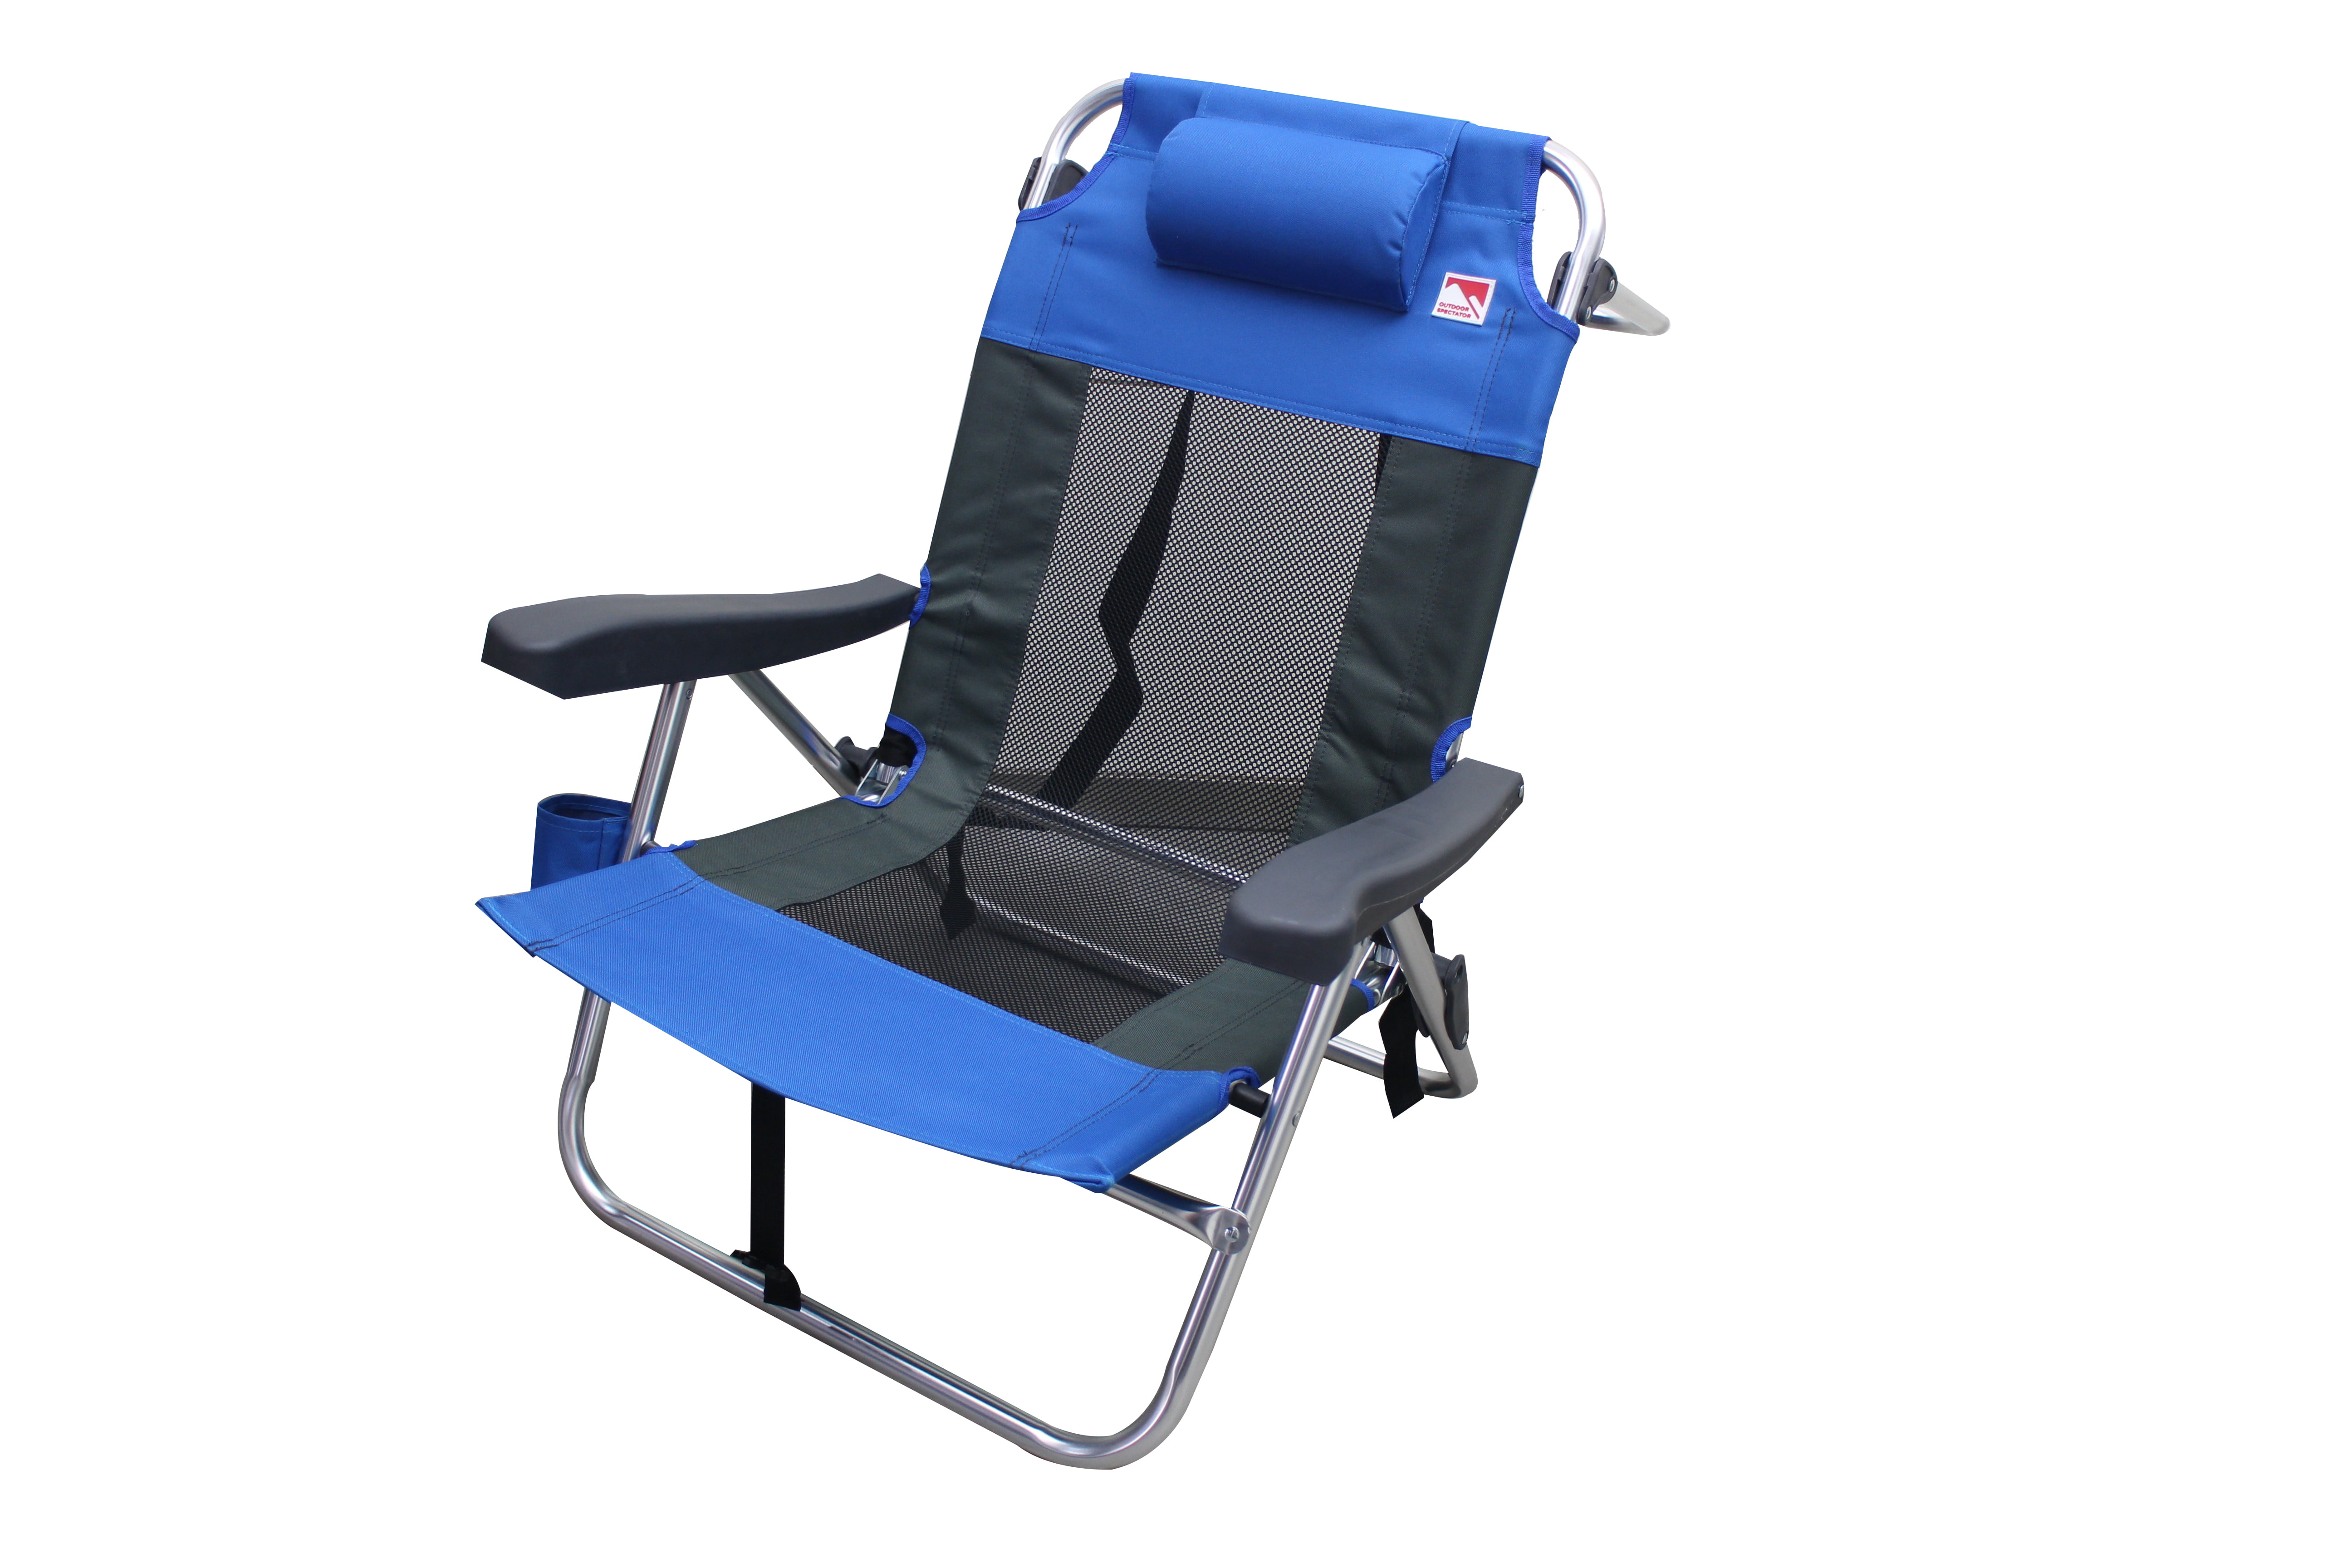 Outdoor Spectator Multi Position Flat Folding Mesh Ultralight Beach Backpack Beach Chair 2 Pack Blue Walmart Com Walmart Com